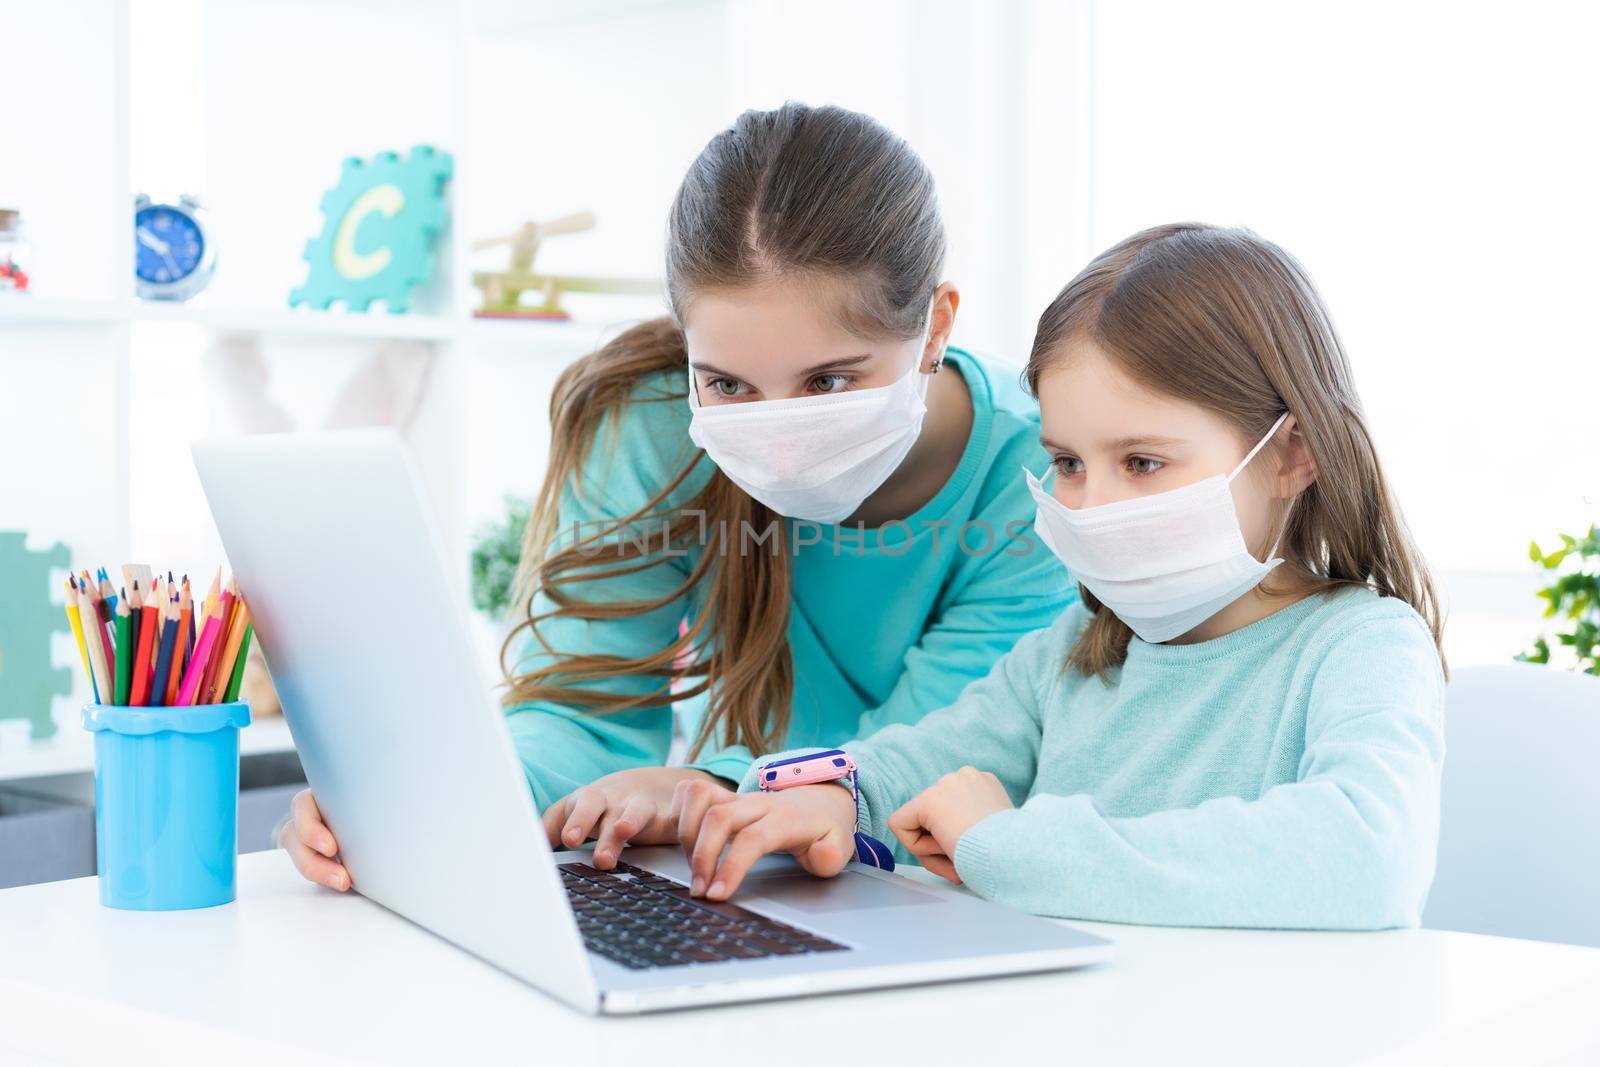 Girls studying at home using laptop during coronavirus pandemic